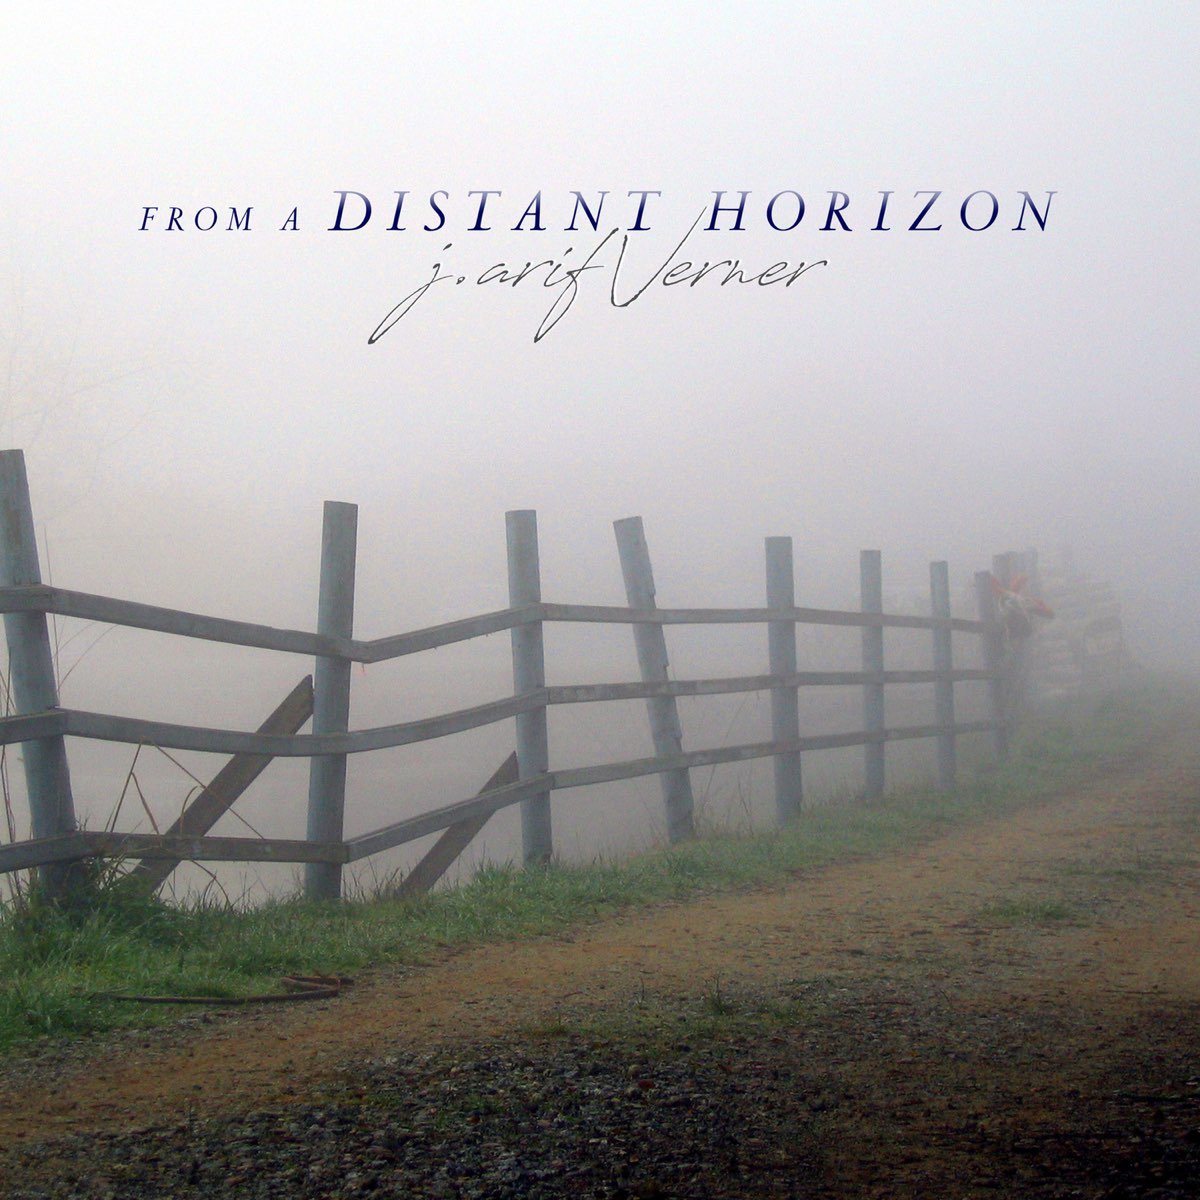 Альбом Thierry David. Distant Horizons. Distant Heritage. Distant Horizons обзор. Bliss distant horizons